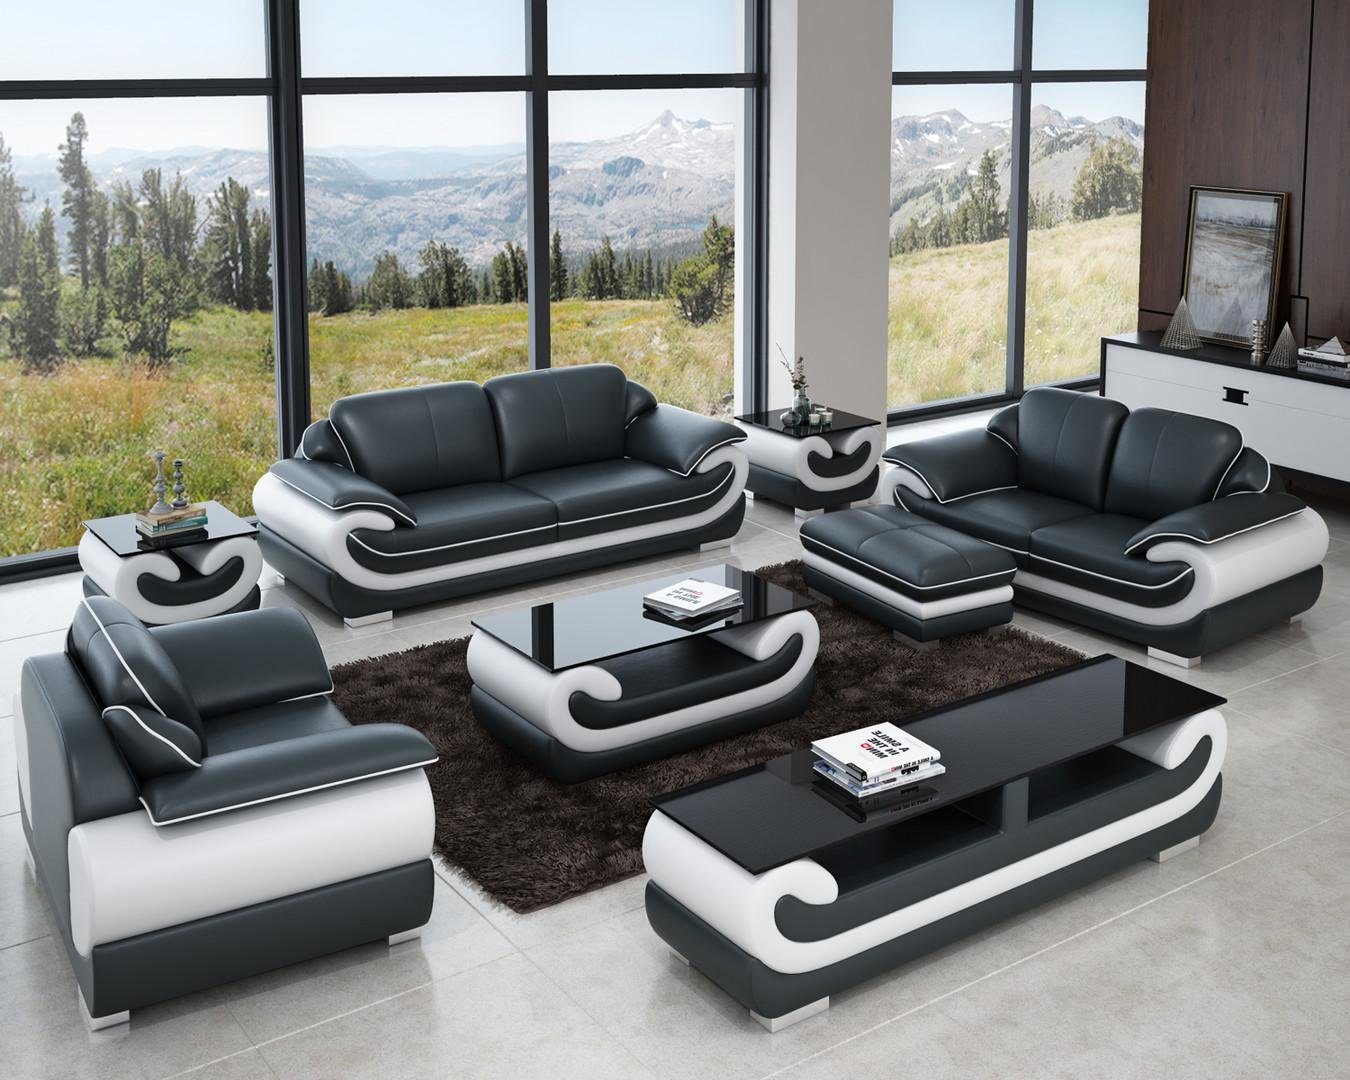 JVmoebel Sofa Ledersofa Sitzer Wohnlandschaft Made Garnitur 3+1+1 Europe Couch Grau/Weiß in Design